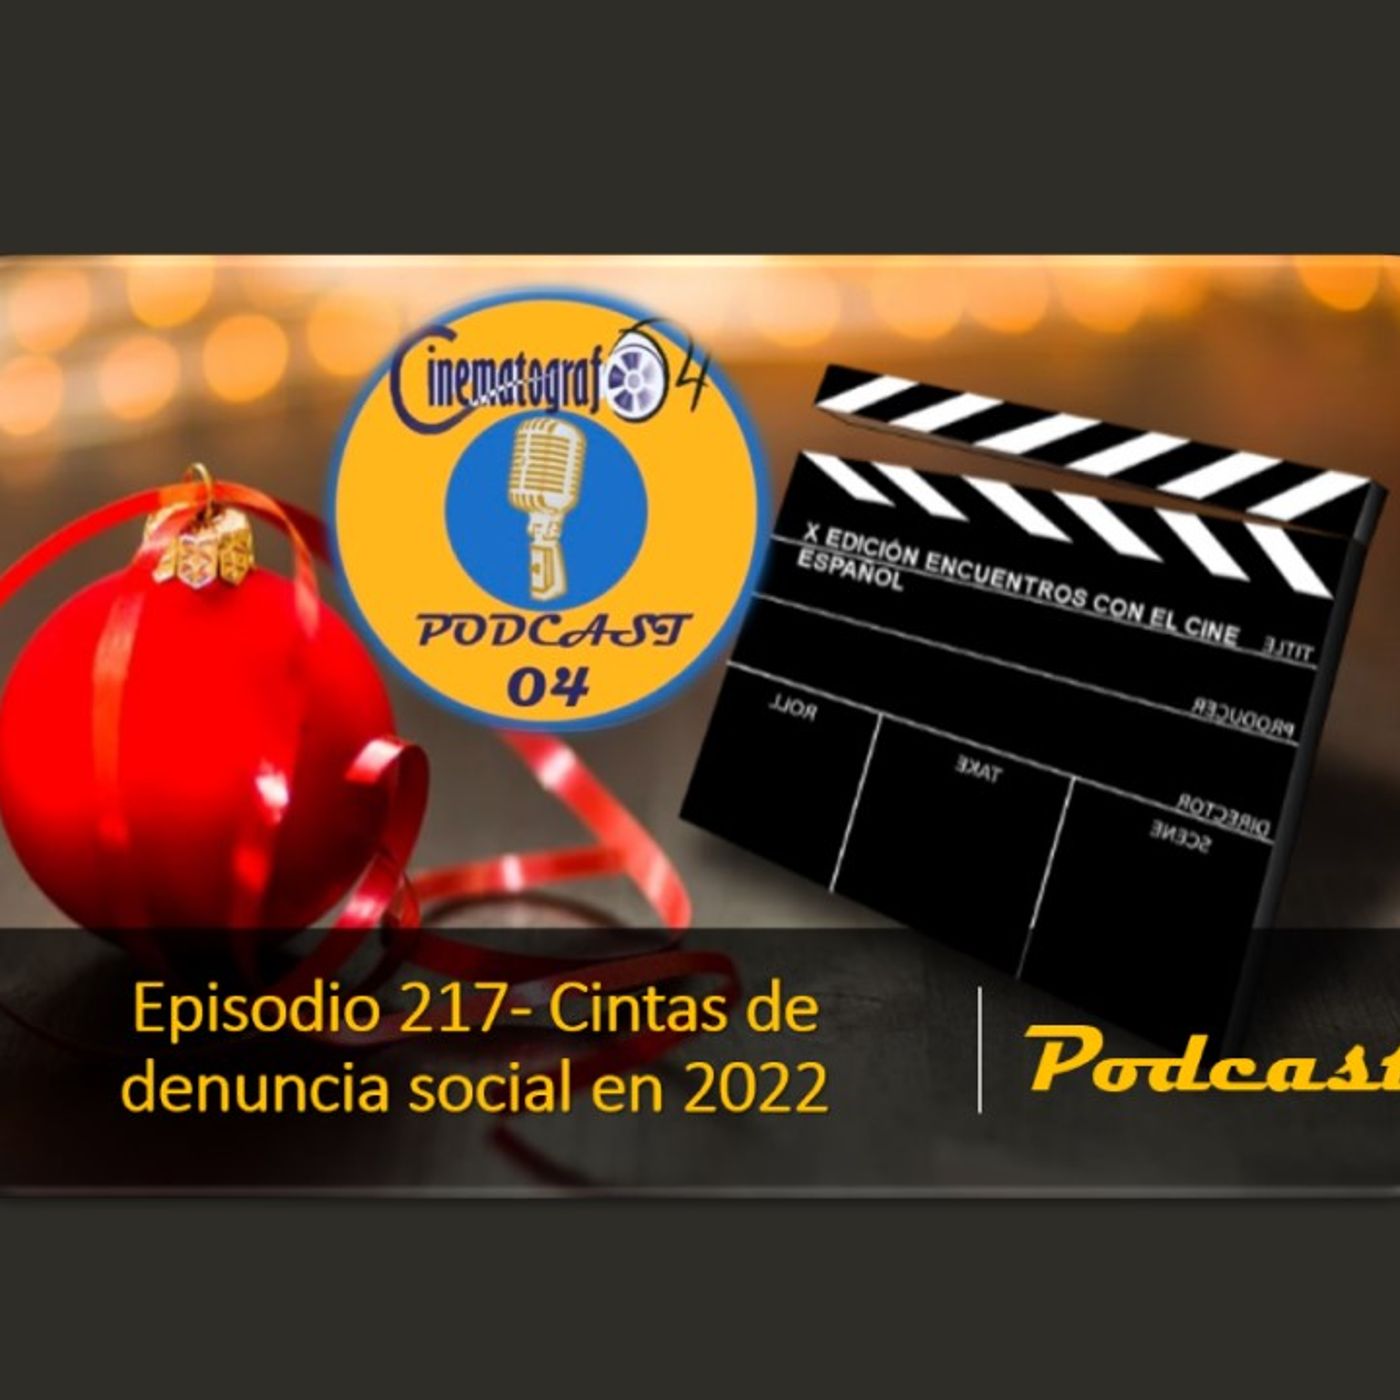 Episodio 219 - Filmes sudamericanos reseñados en 2022